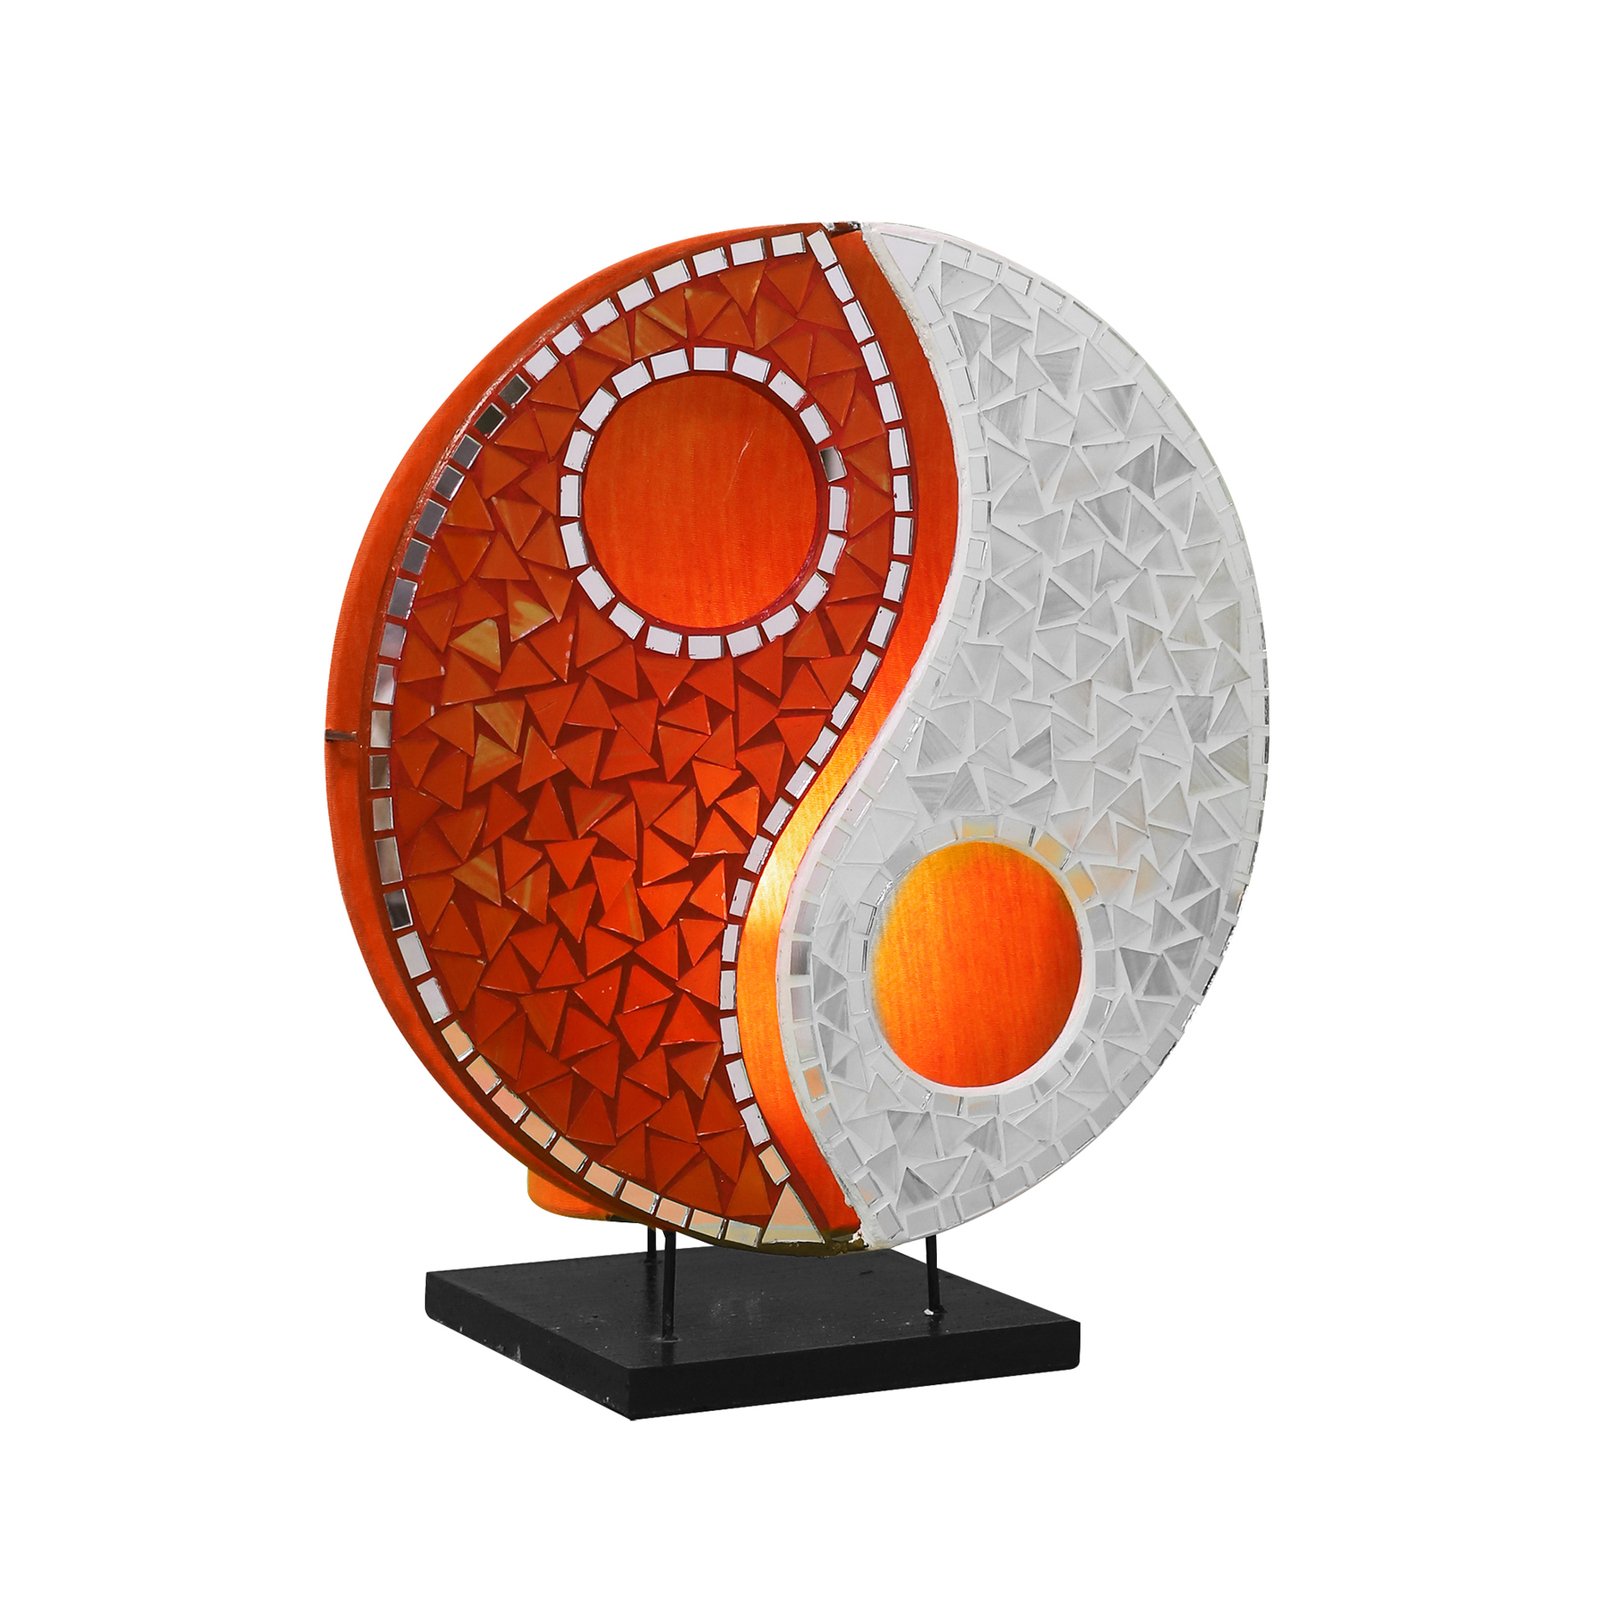 Ying Yang glass mosaic table lamp orange/white